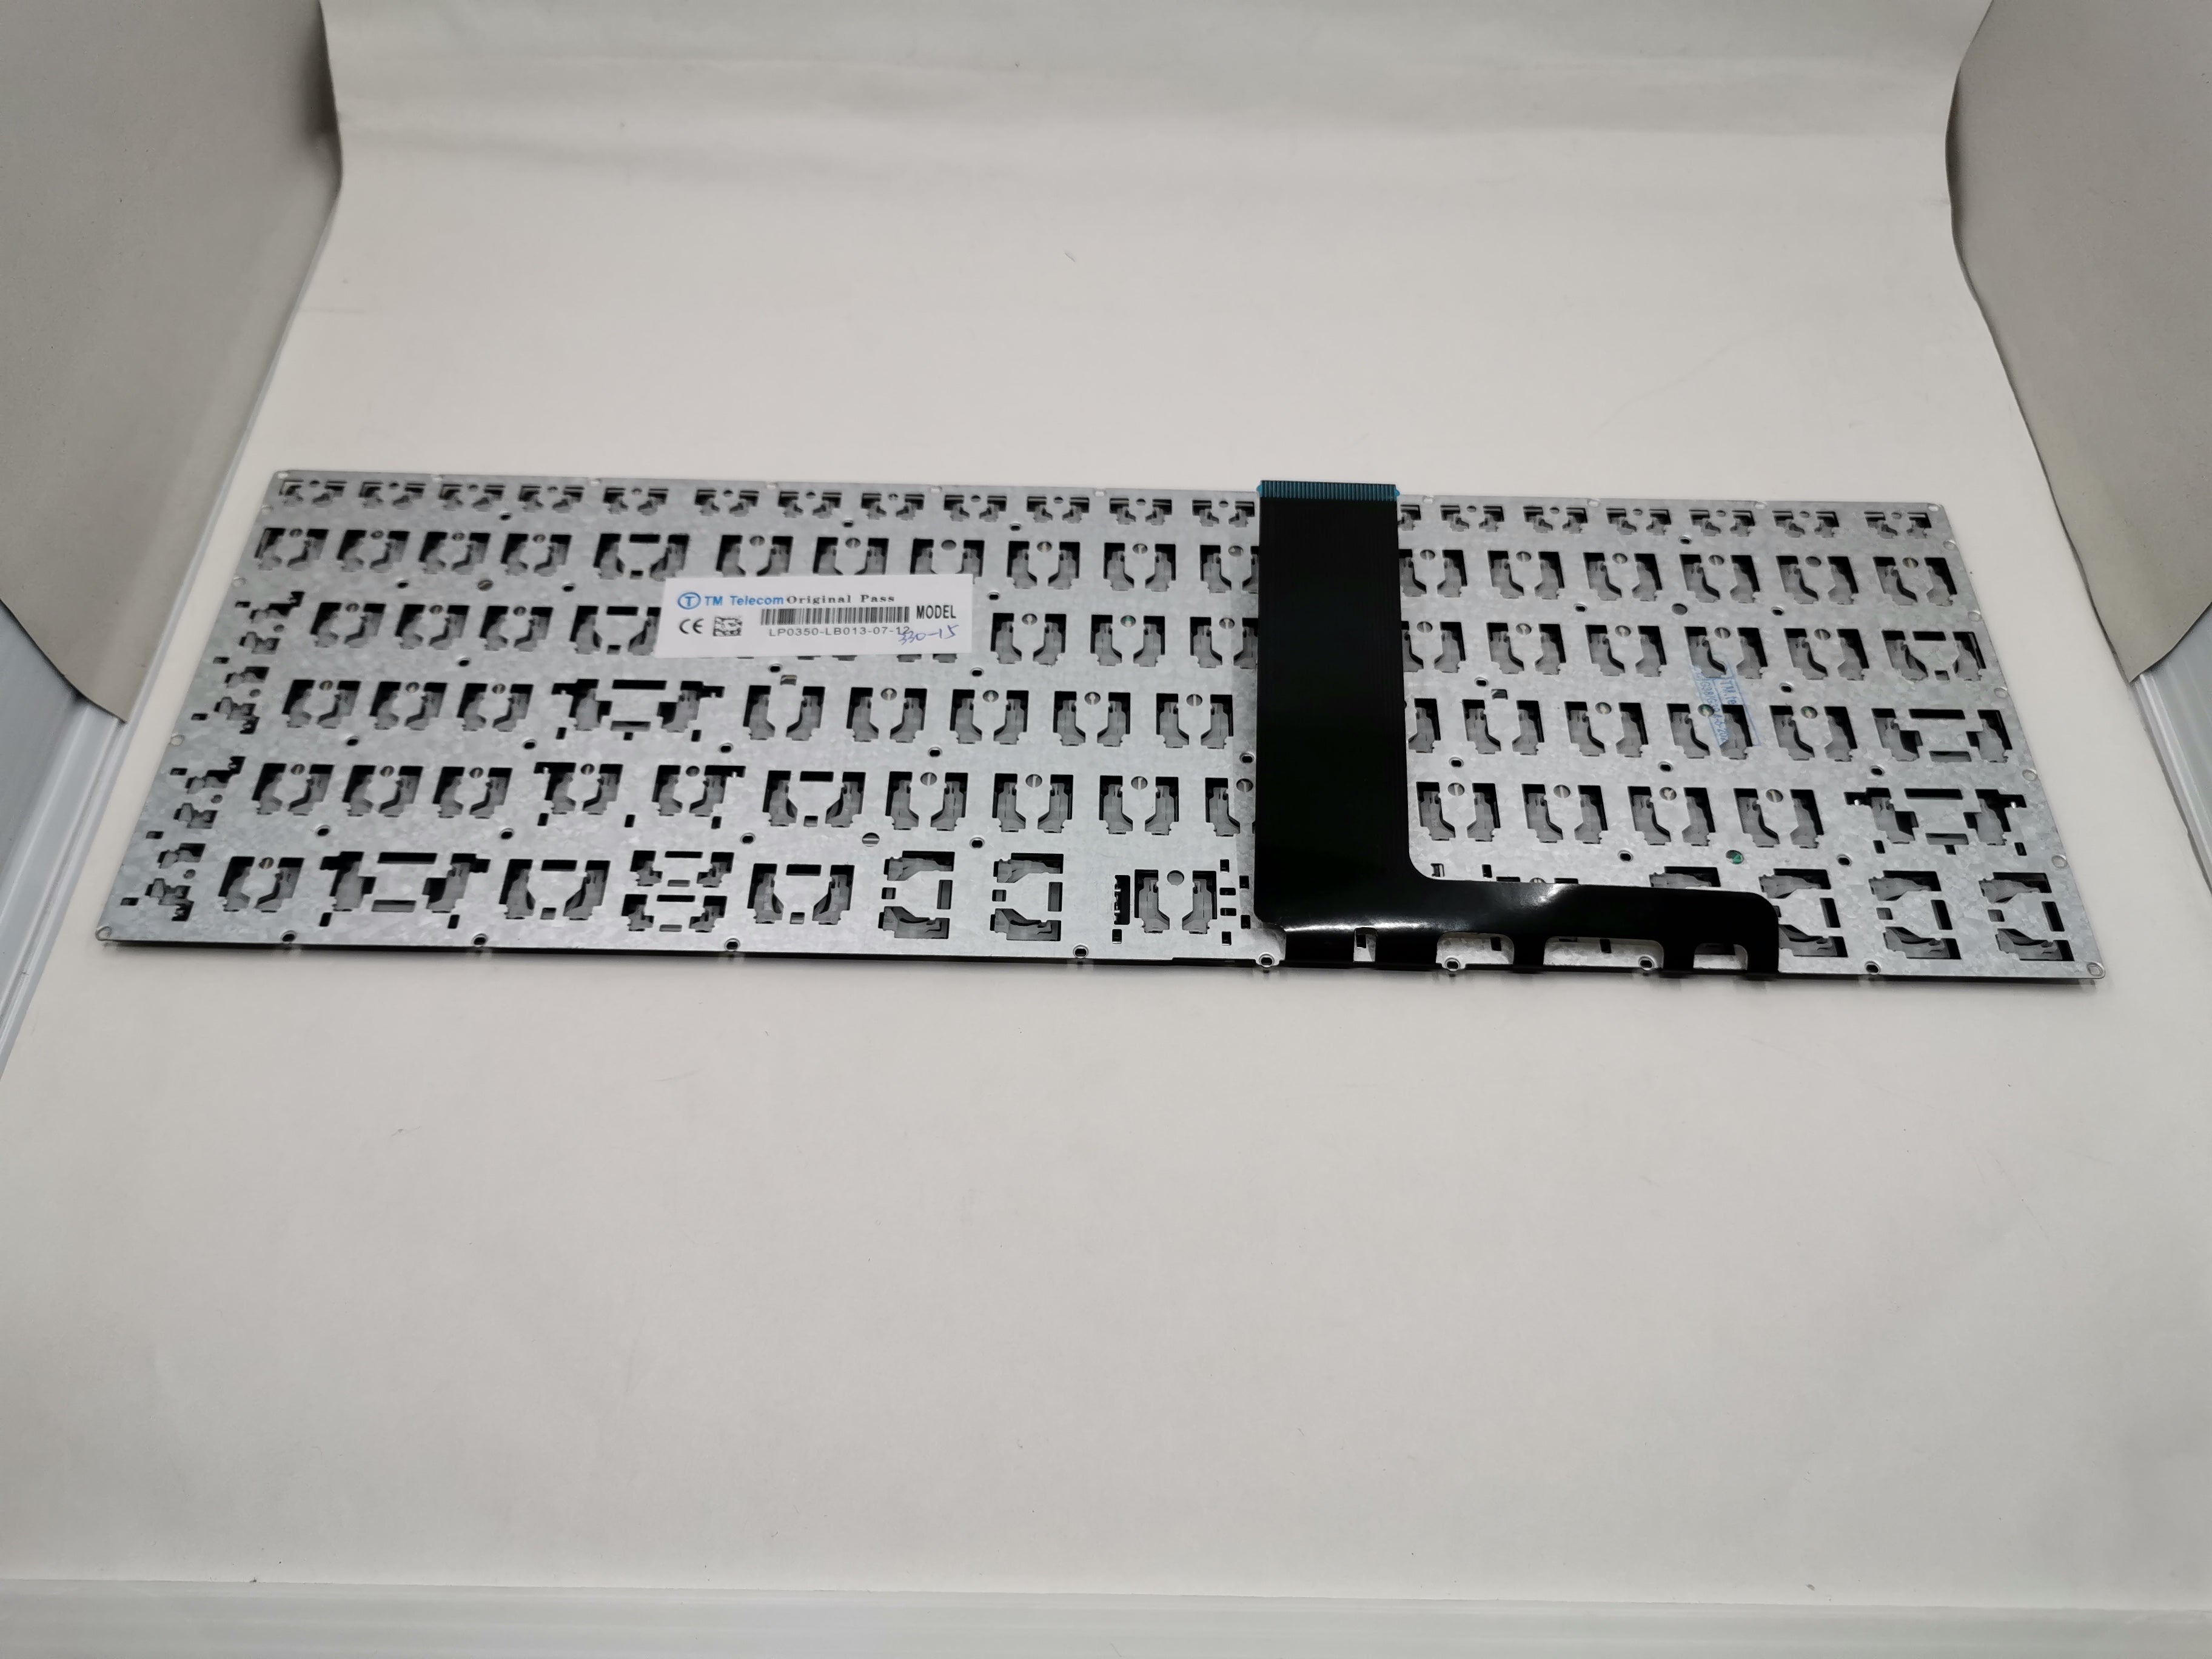 Lenovo Keyboard for Lenovo IdeaPad 5 15ITL05